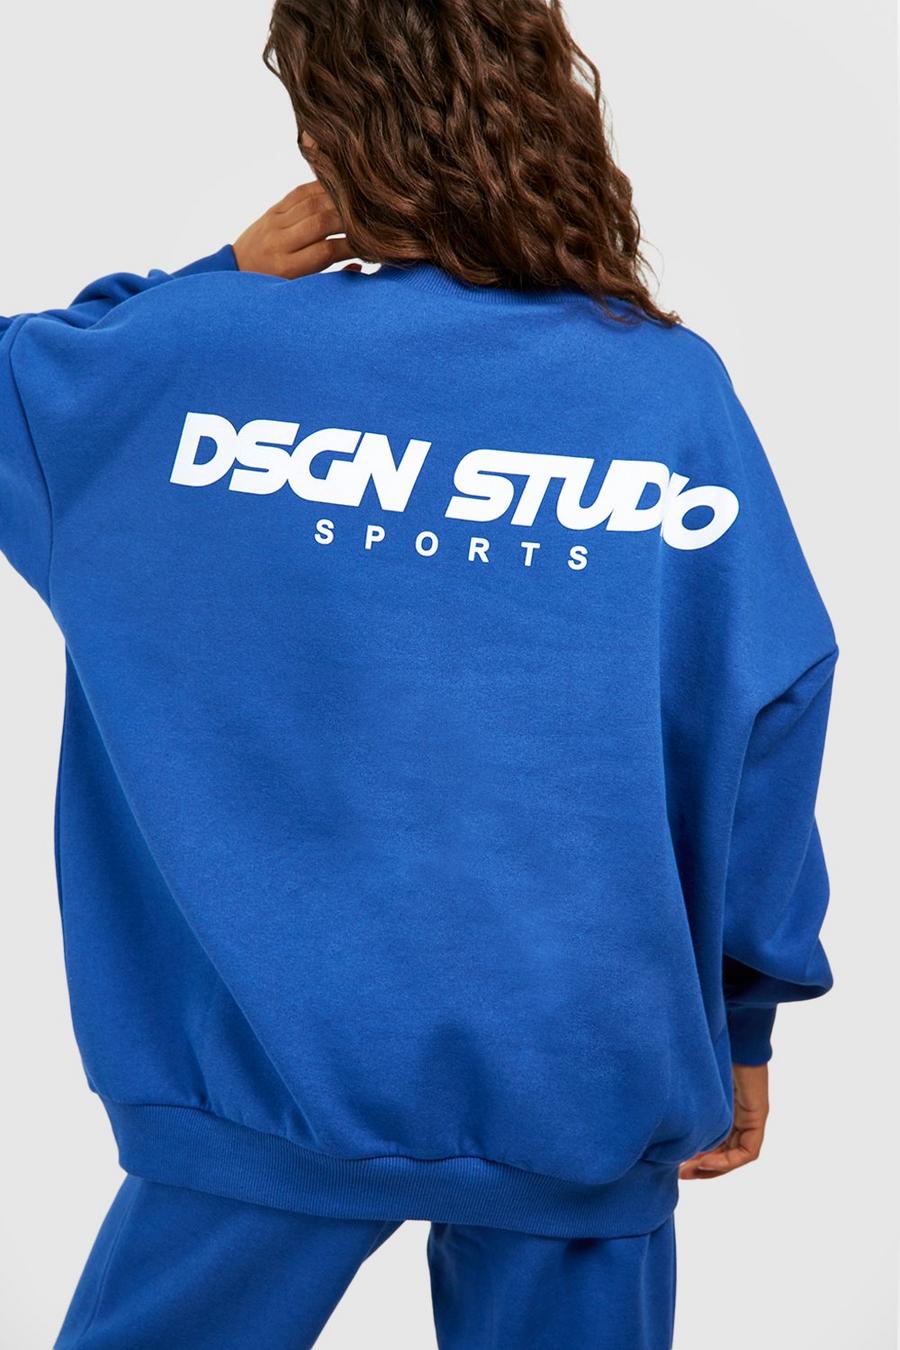 Cobalt Dsgn Studio Sports Oversized Sweatshirt image number 1